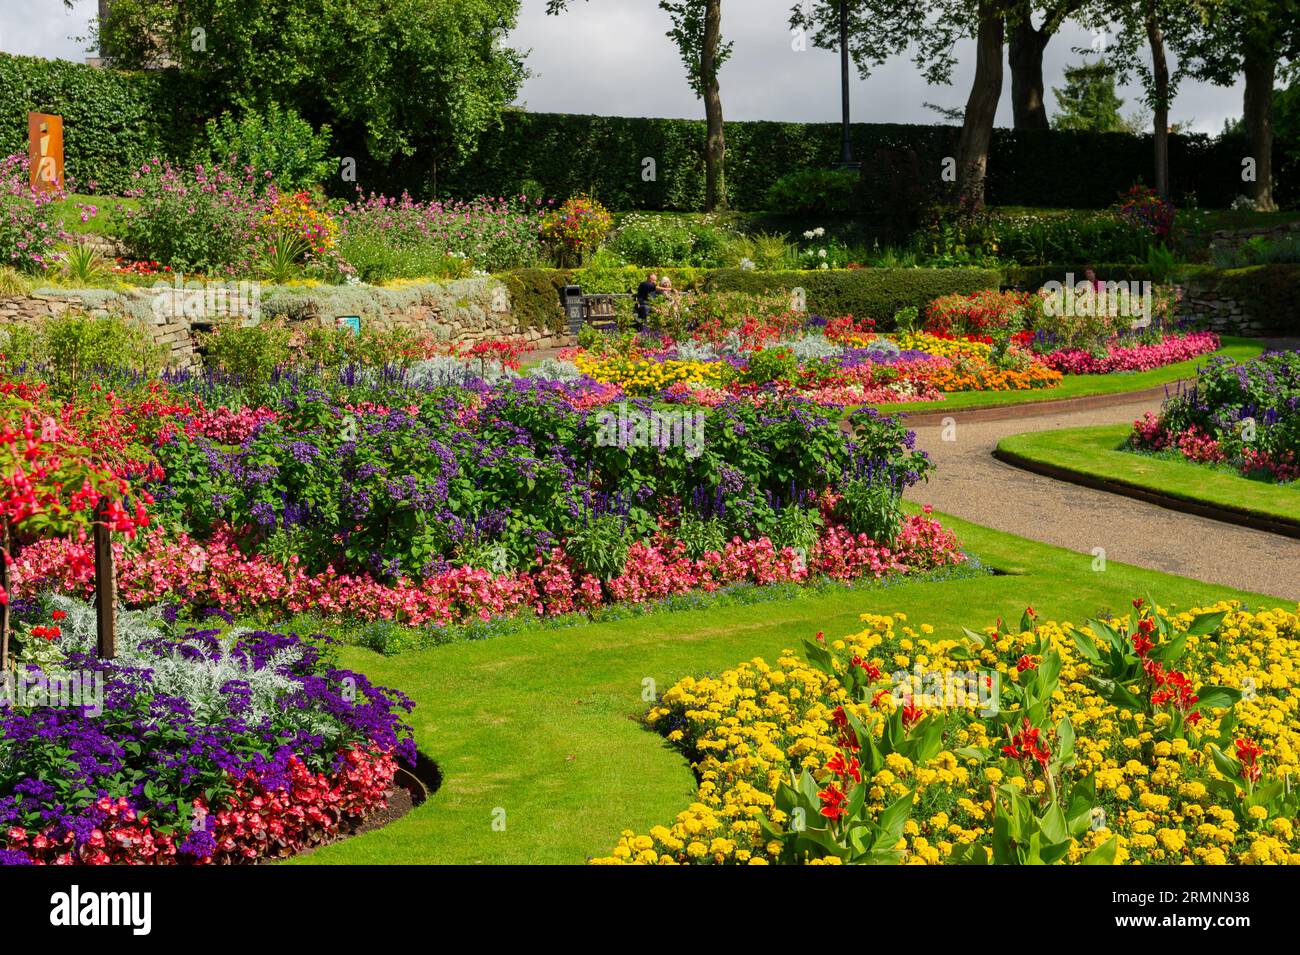 Vibrant Flower Gardens inside The Dingle at The Quarry, Shrewsbury, Shropshire, England Stock Photo